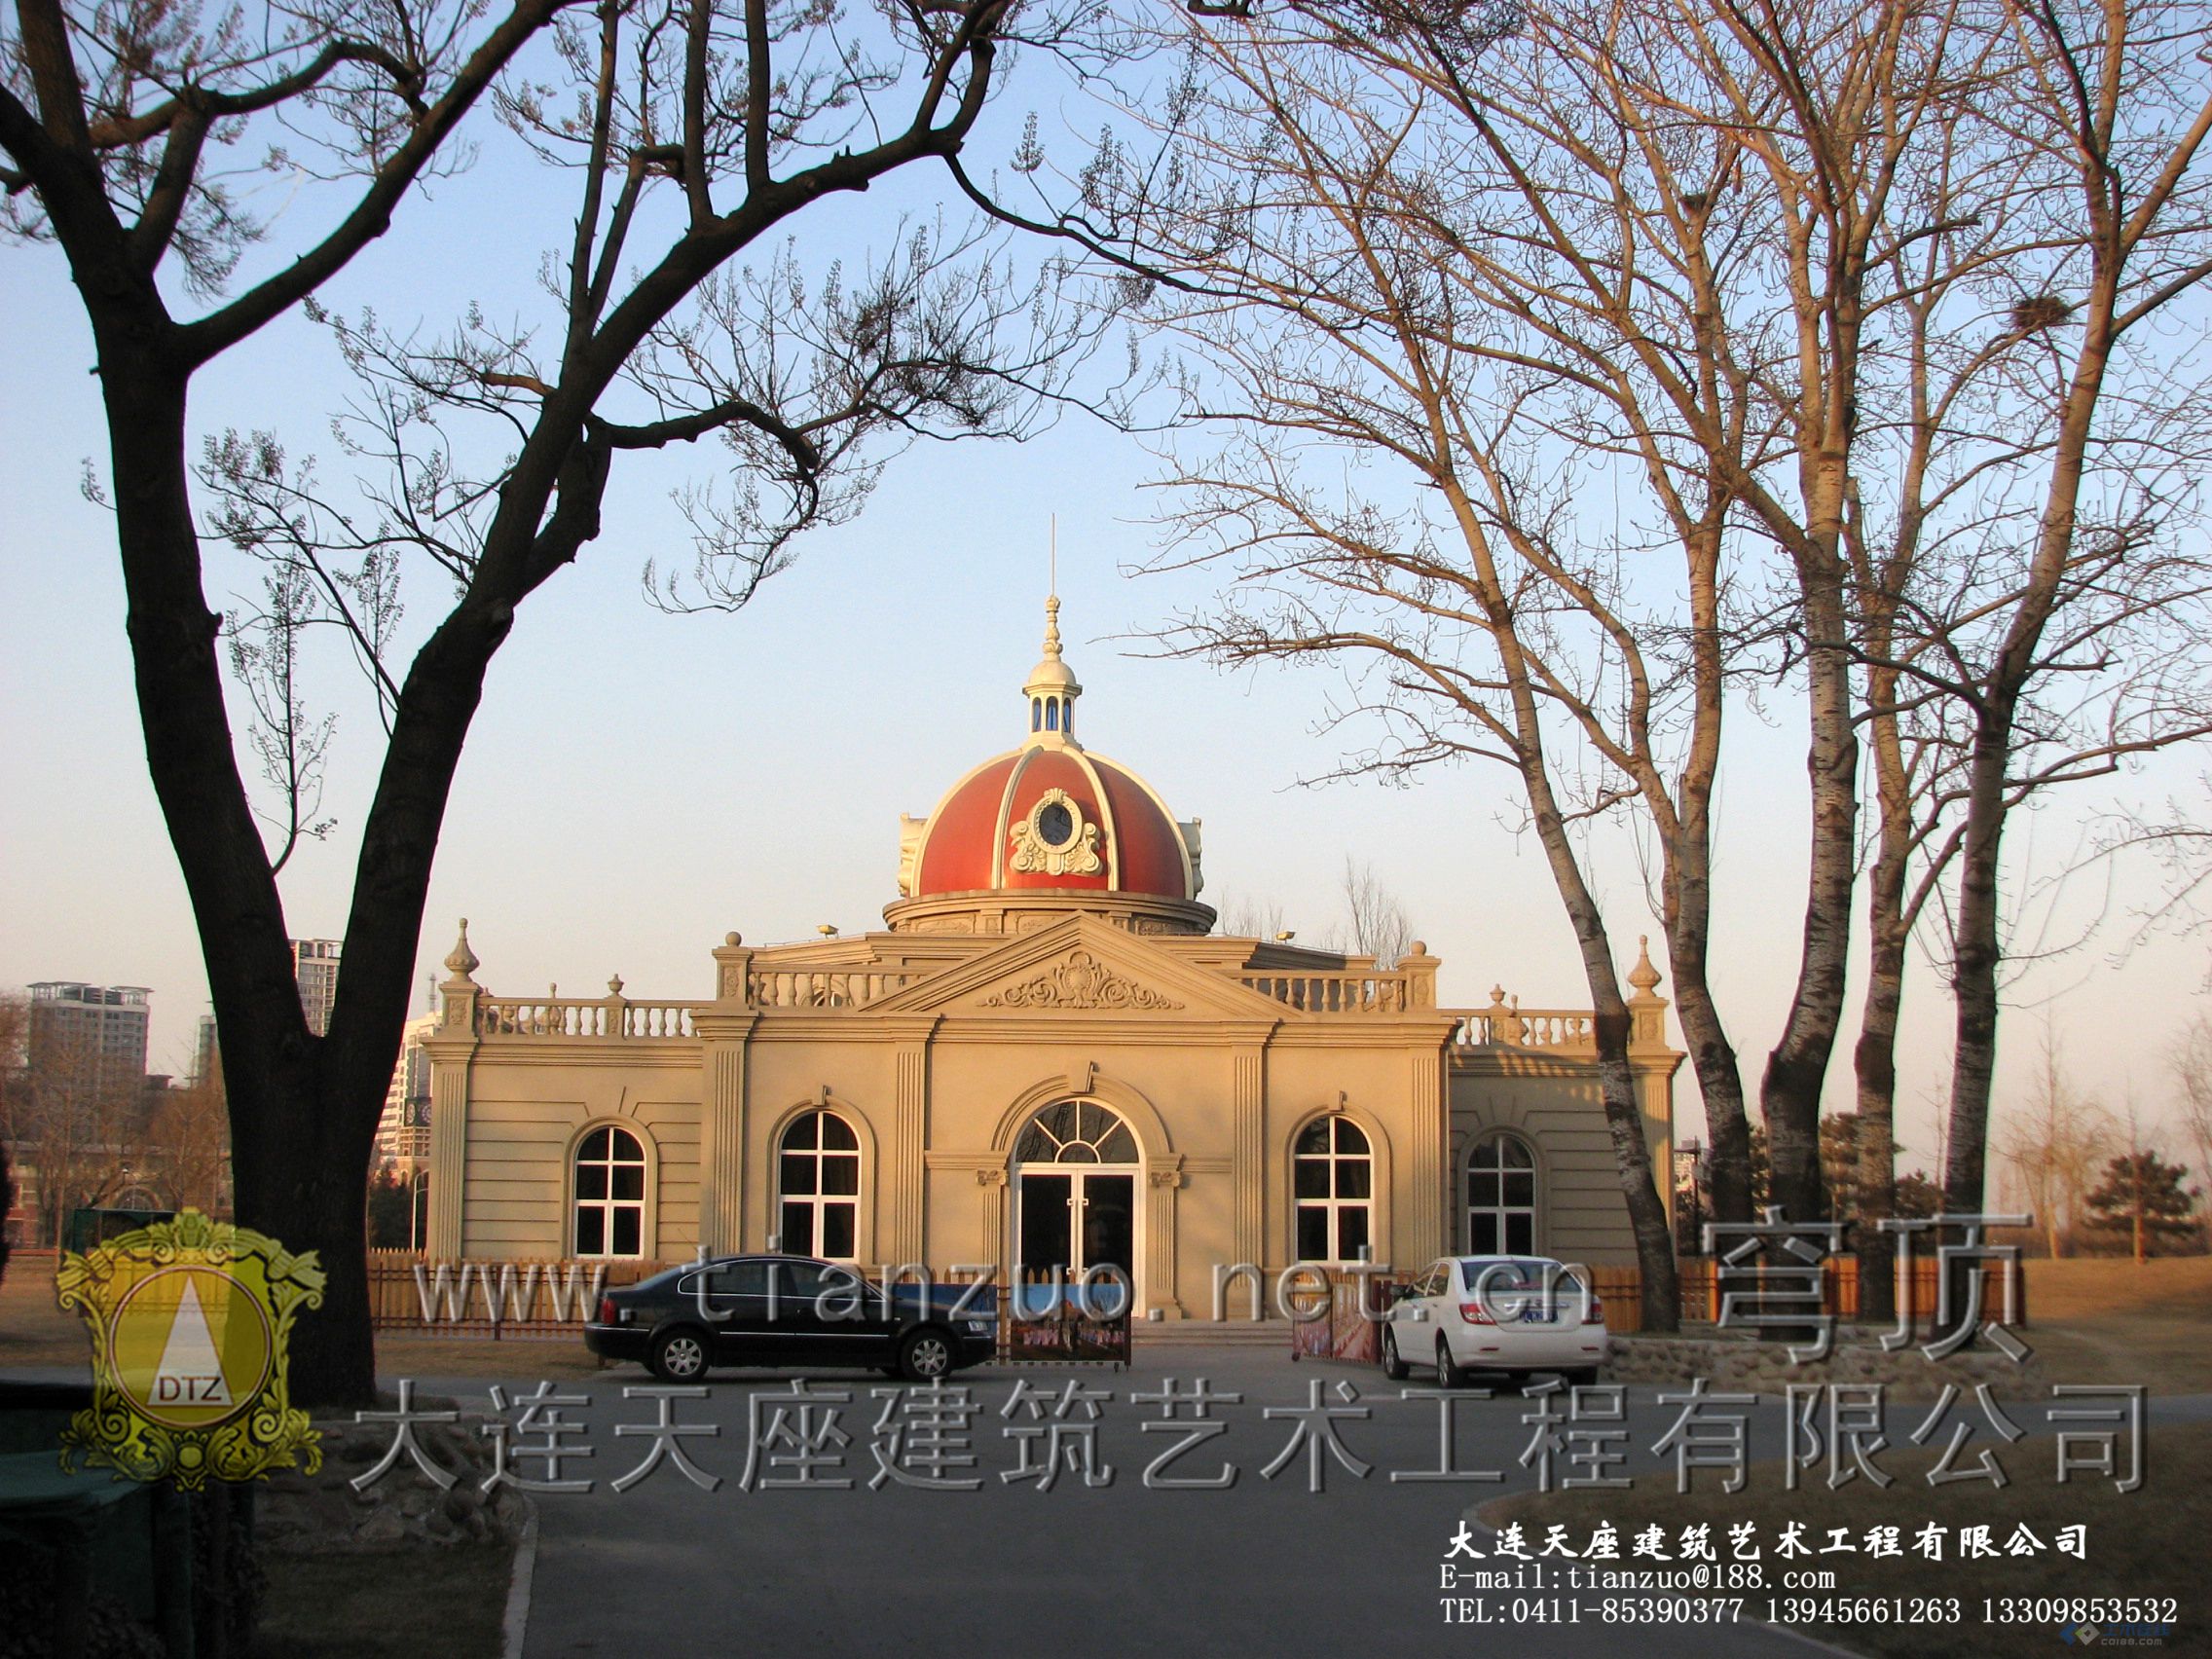 北京朝阳公园婚庆宫穹顶装饰.JPG